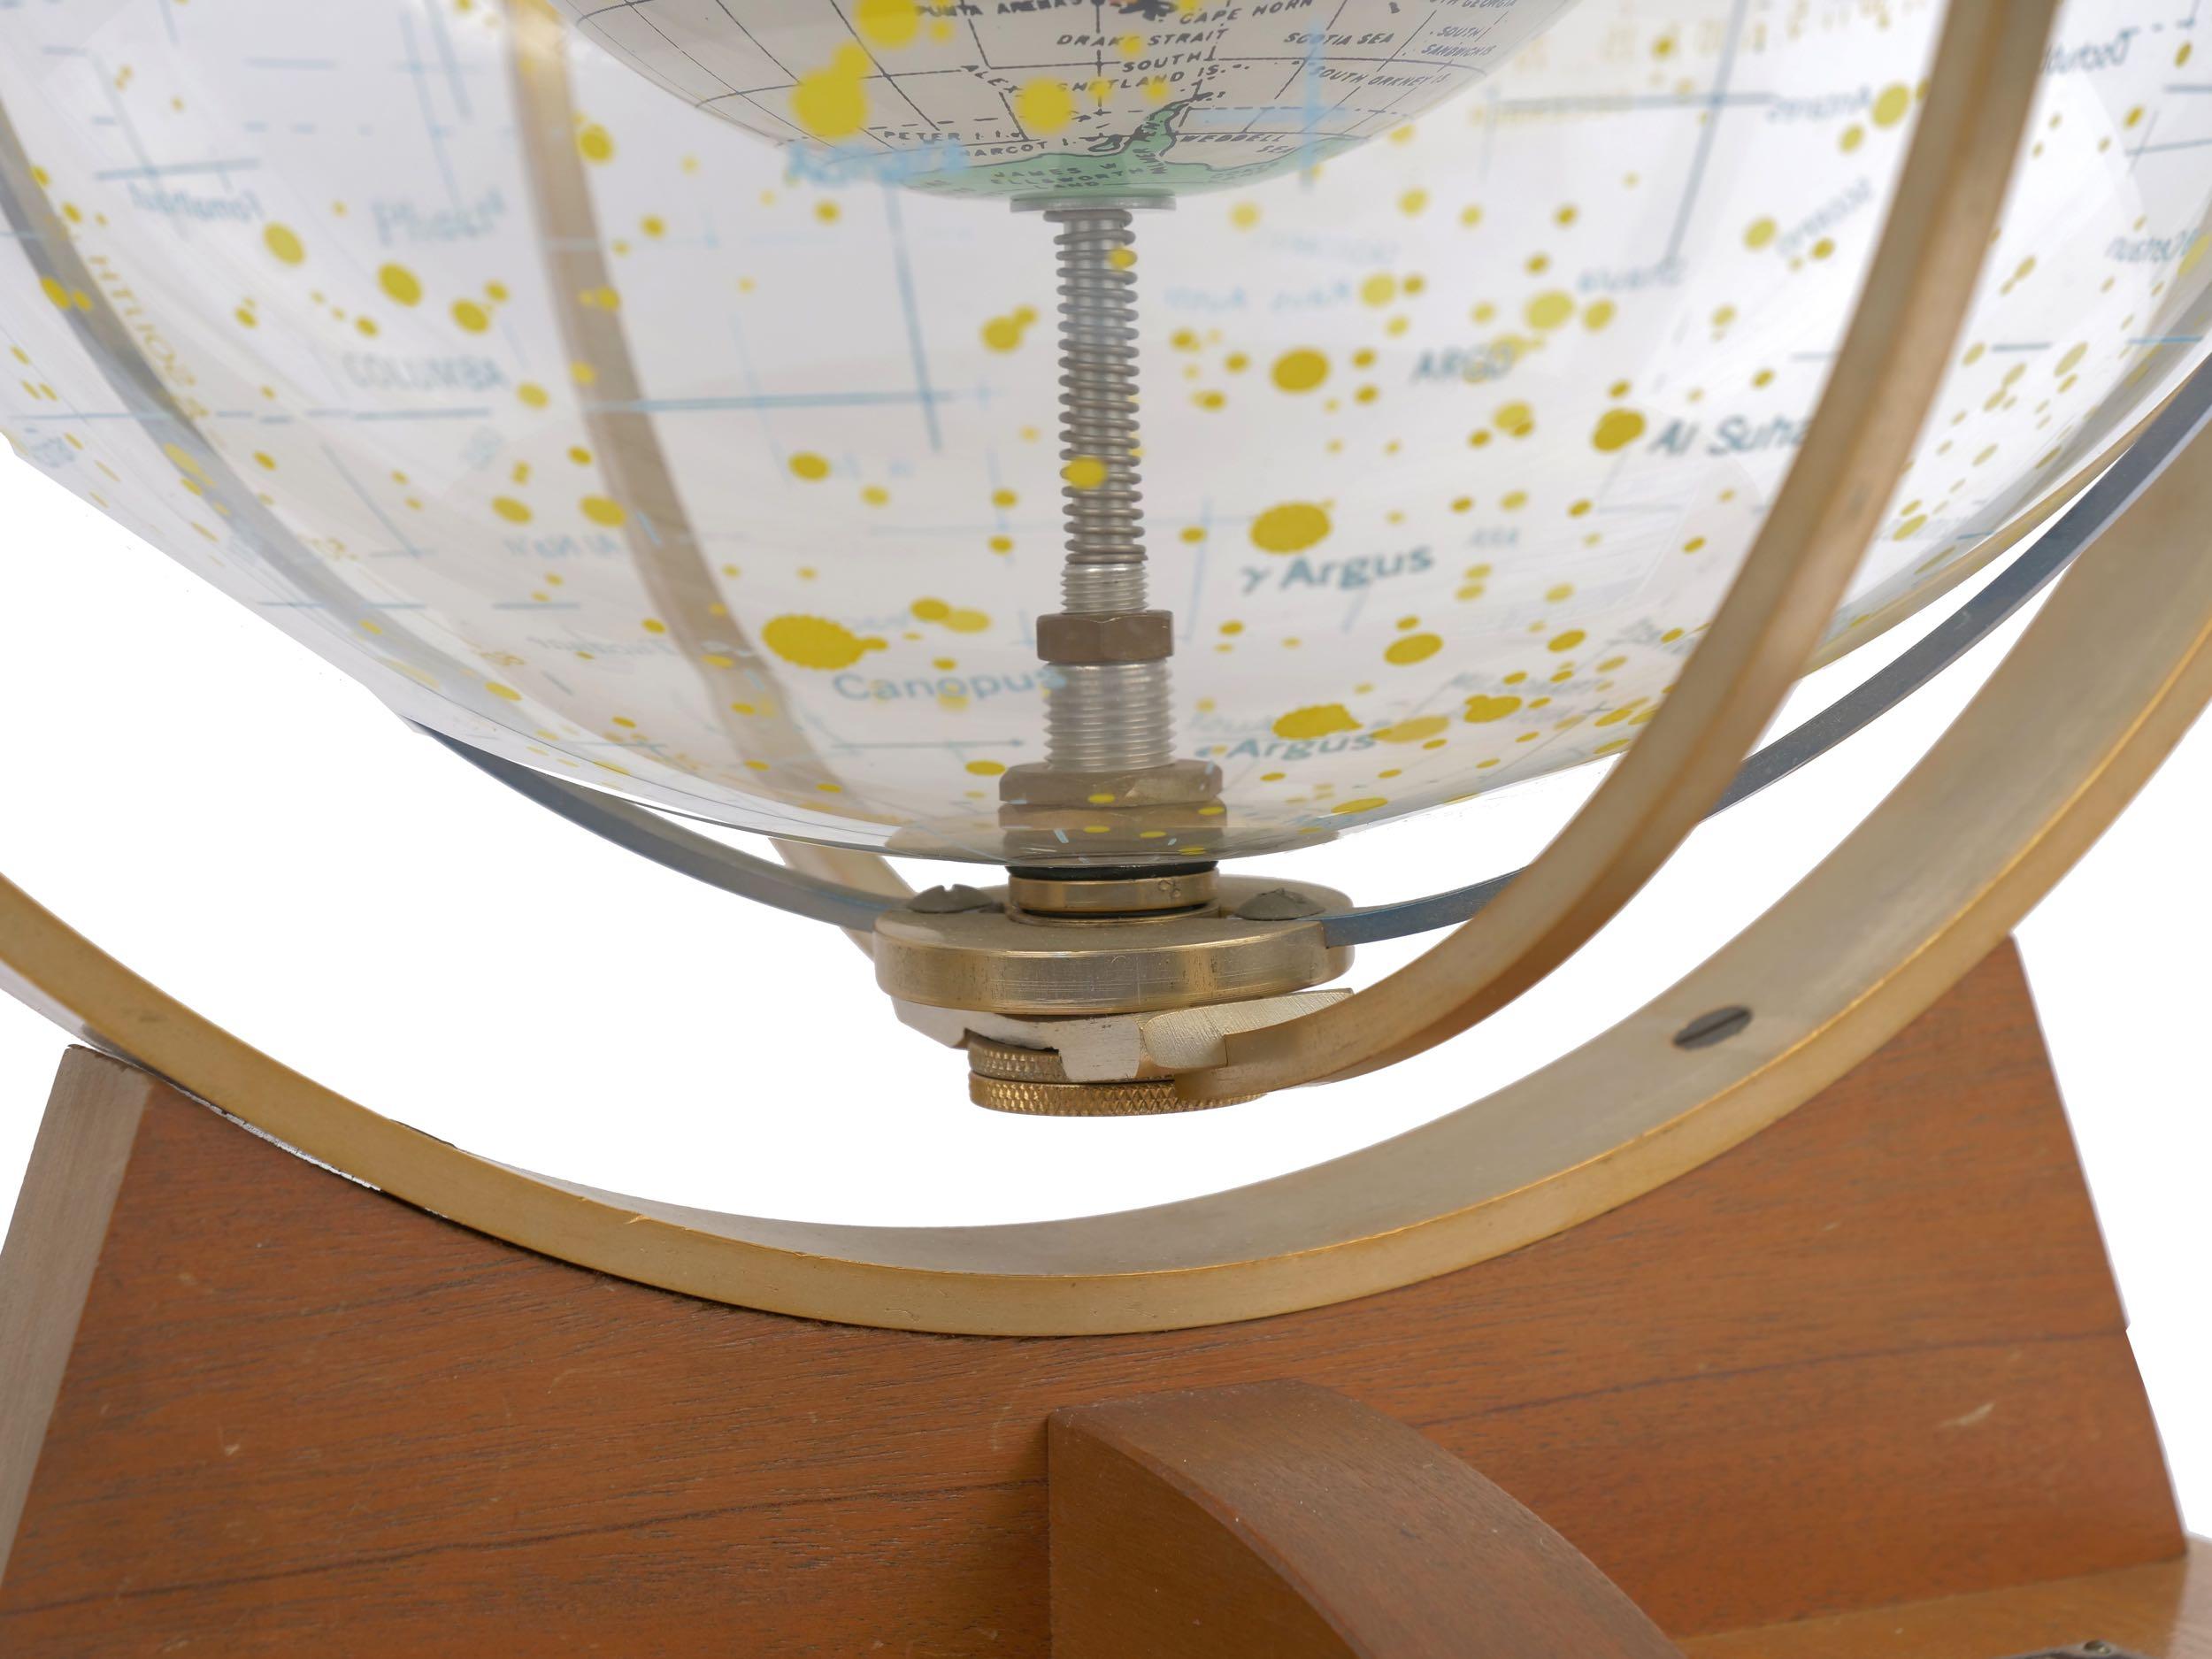 Farquhar Celestial Navigation Armillary Sphere Globe for Dept. of Navy 2